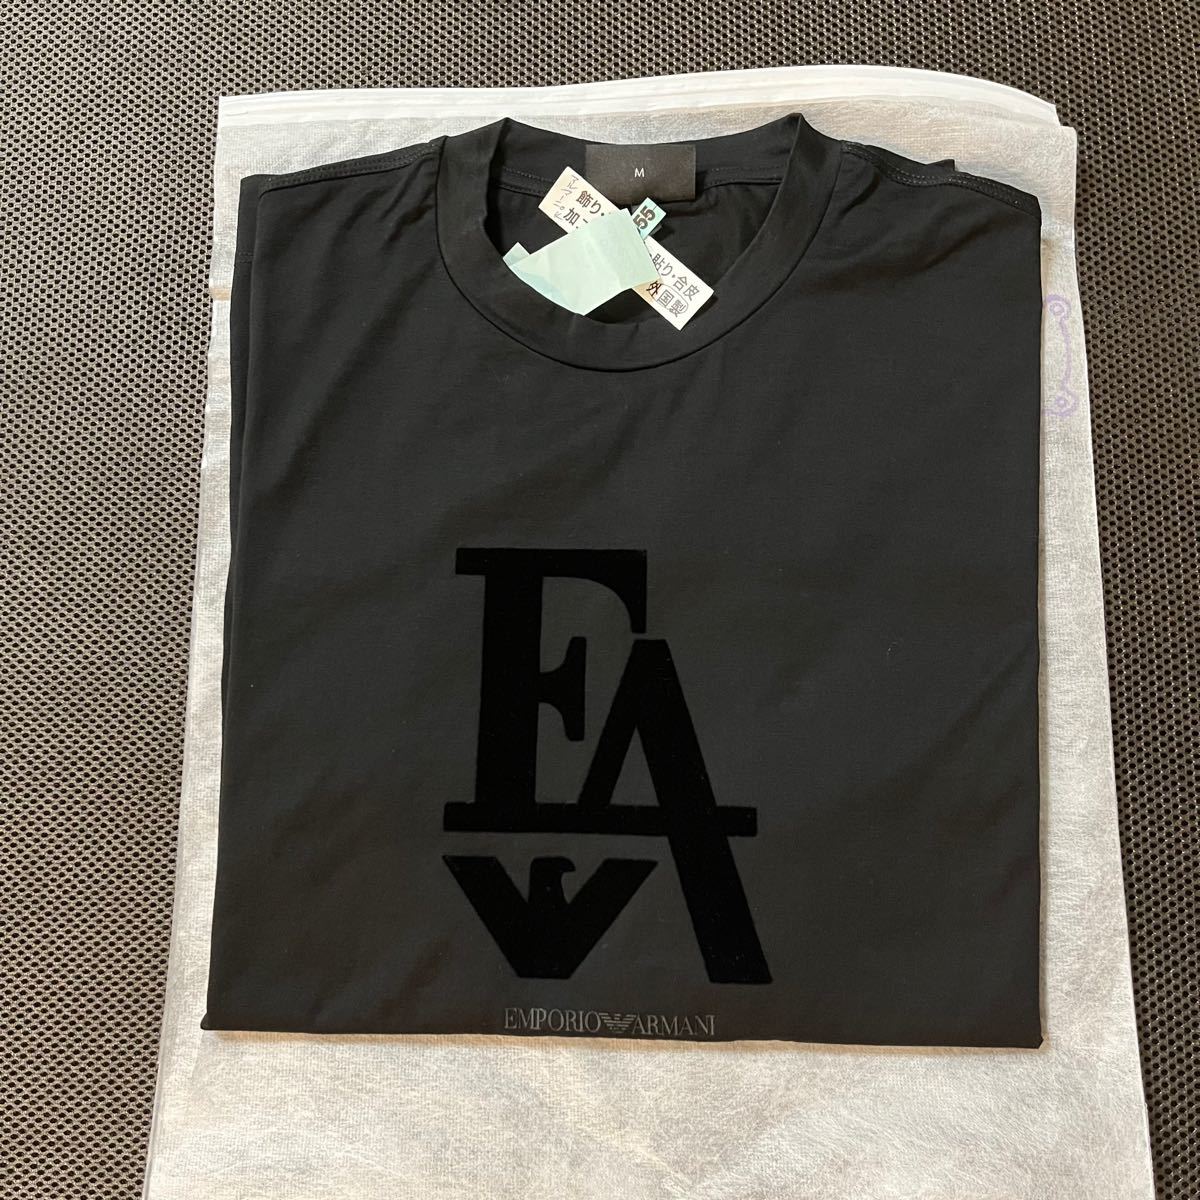 EMPORIO ARMANI Tシャツ シルケットジャージー製 フロックロゴ